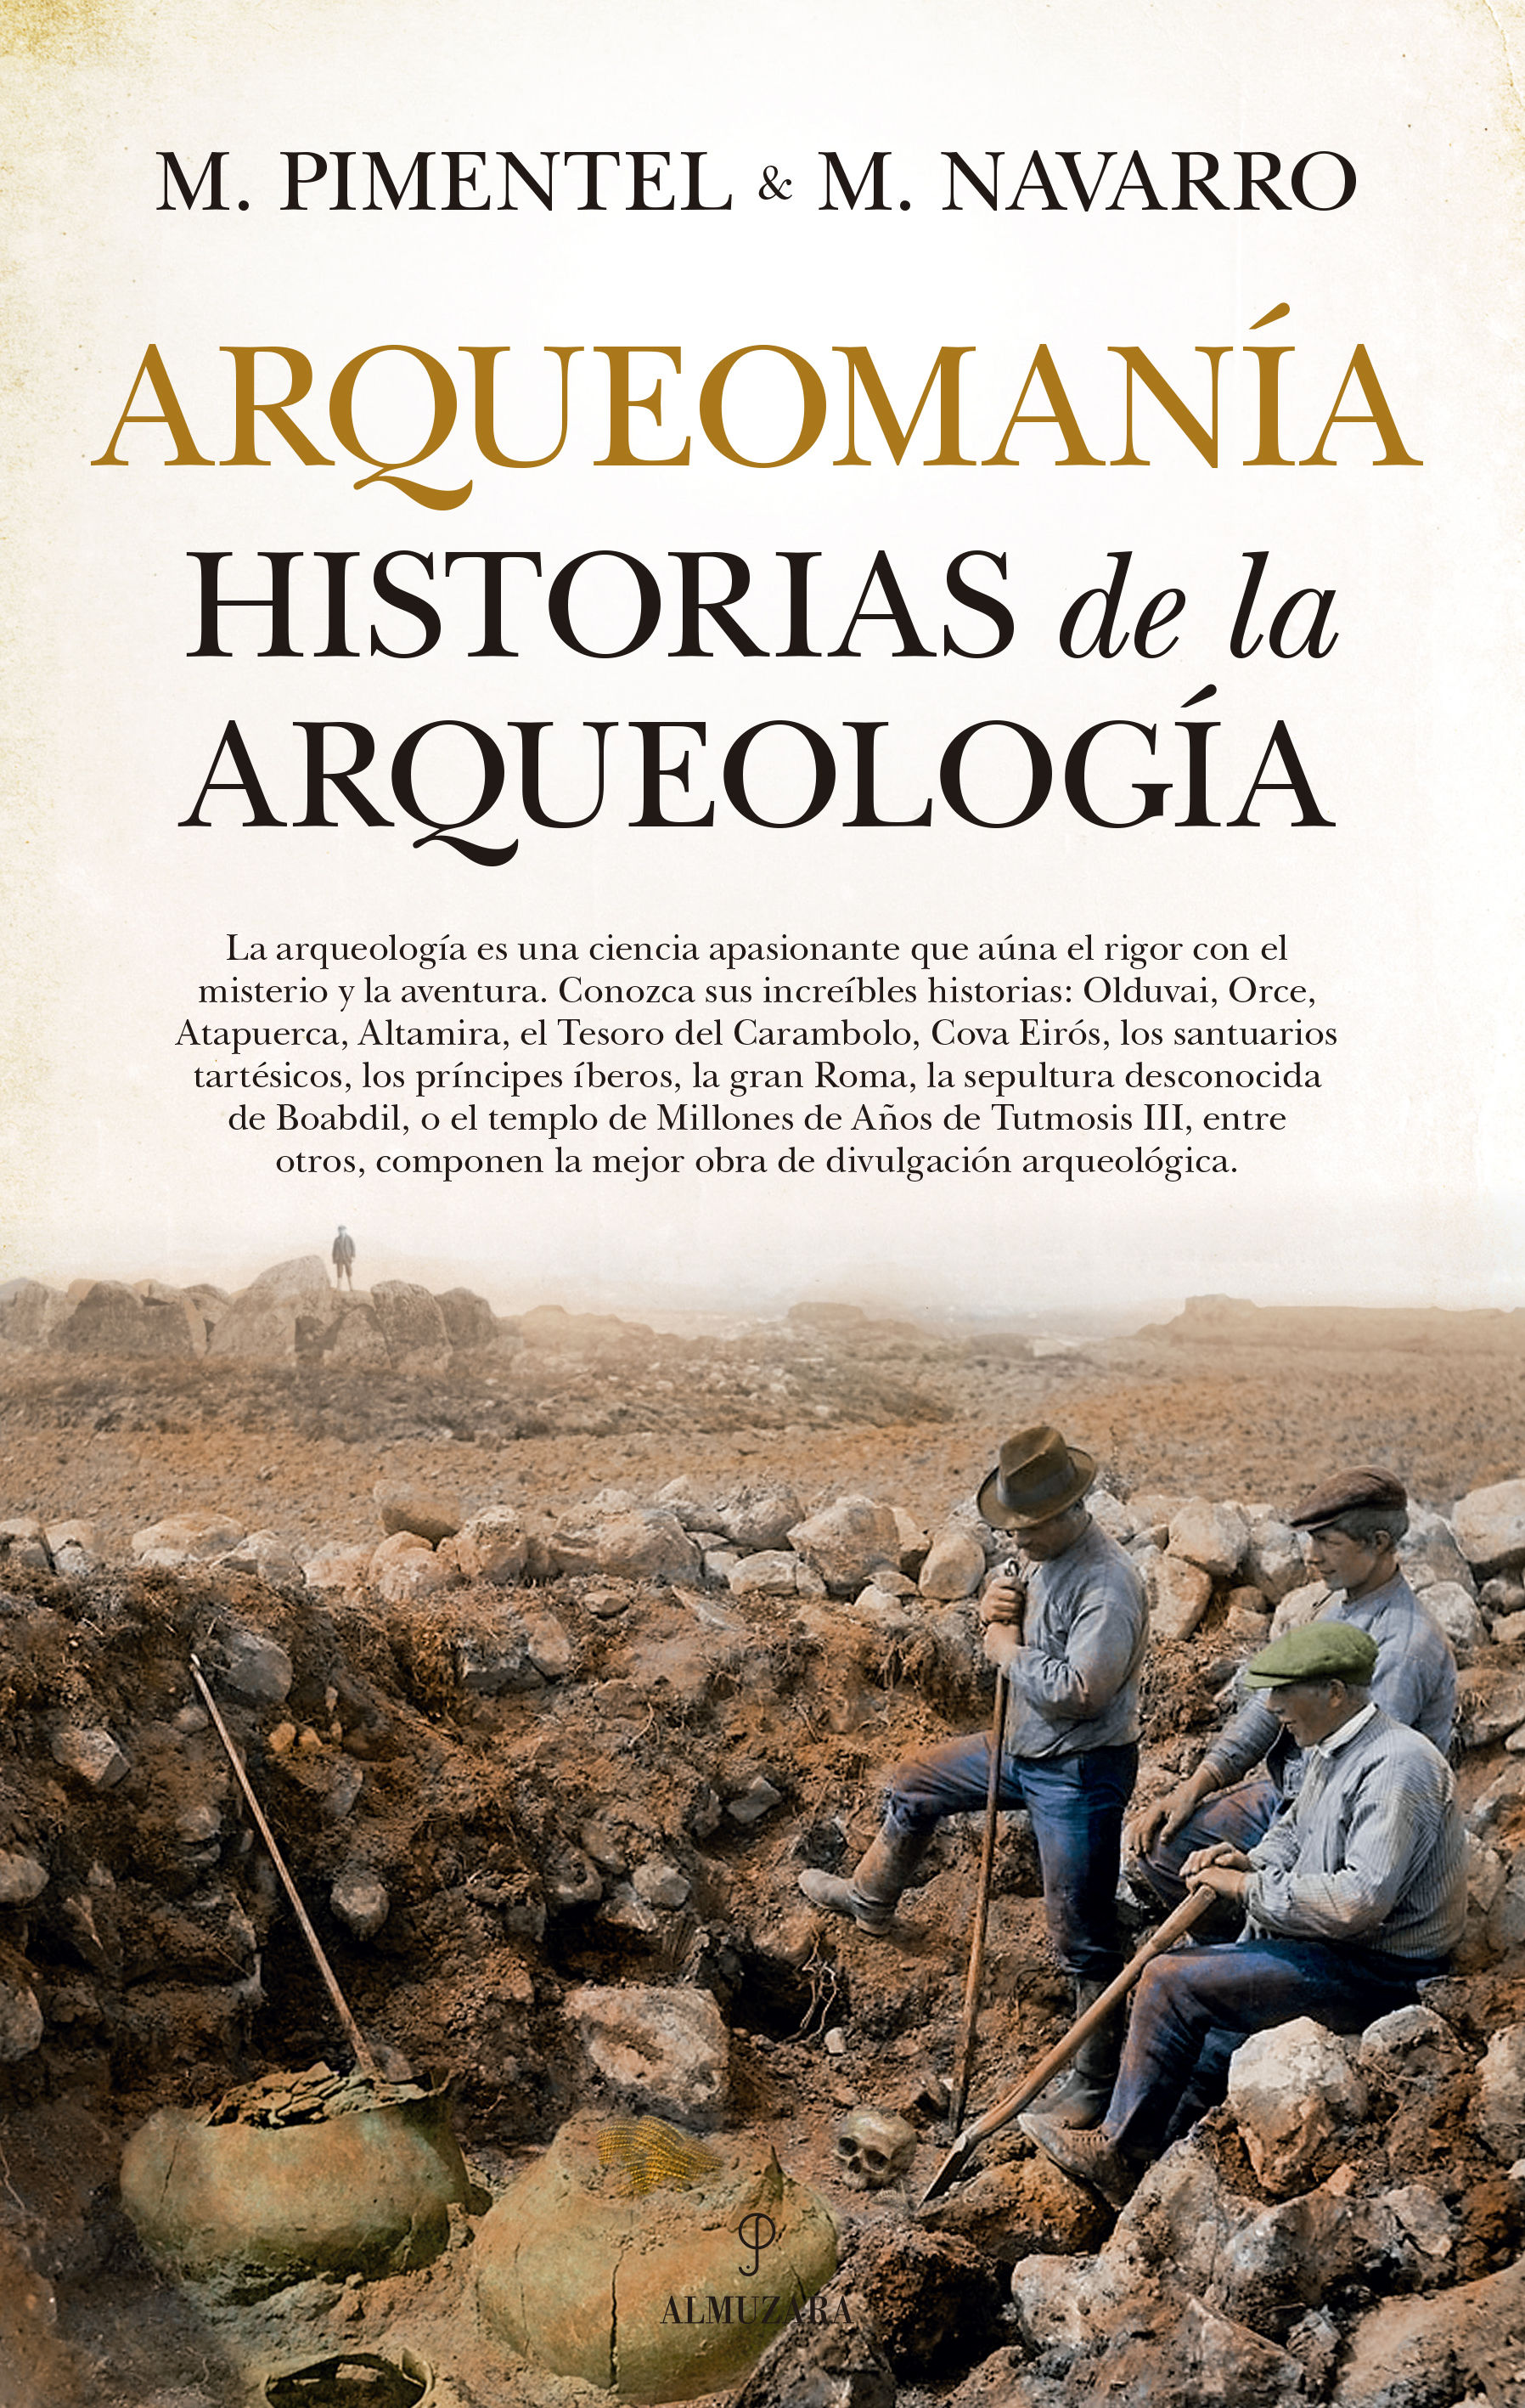 ARQUEOMANÍA. HISTORIAS DE LA ARQUEOLOGÍA